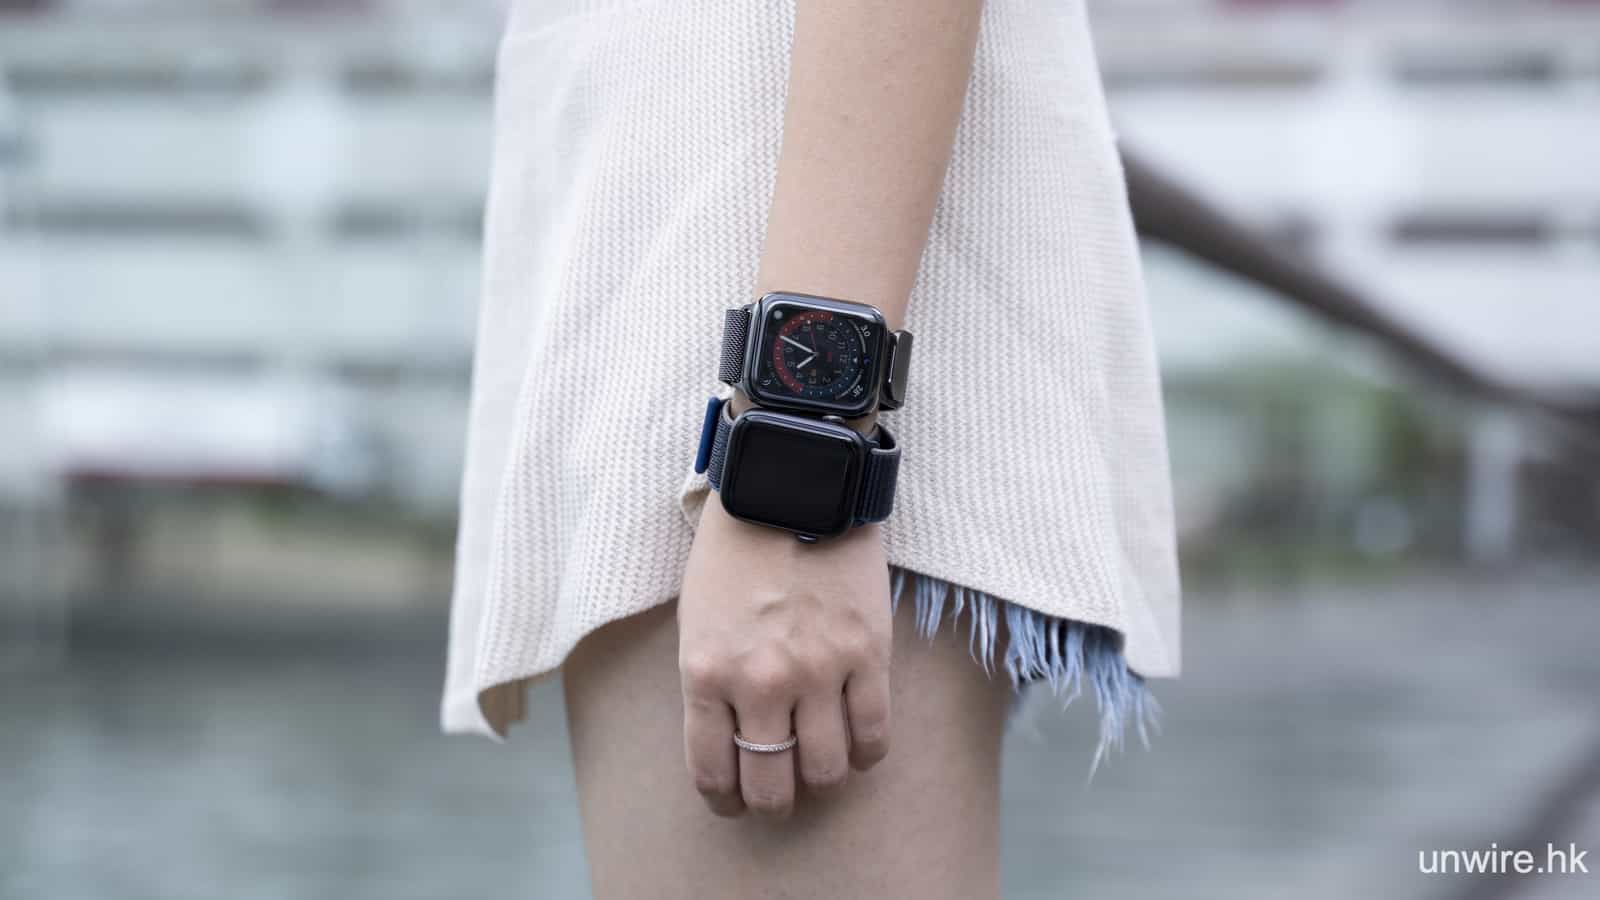 評測】Apple Watch SE 開箱功能測試外型感想用家心得- 香港unwire.hk